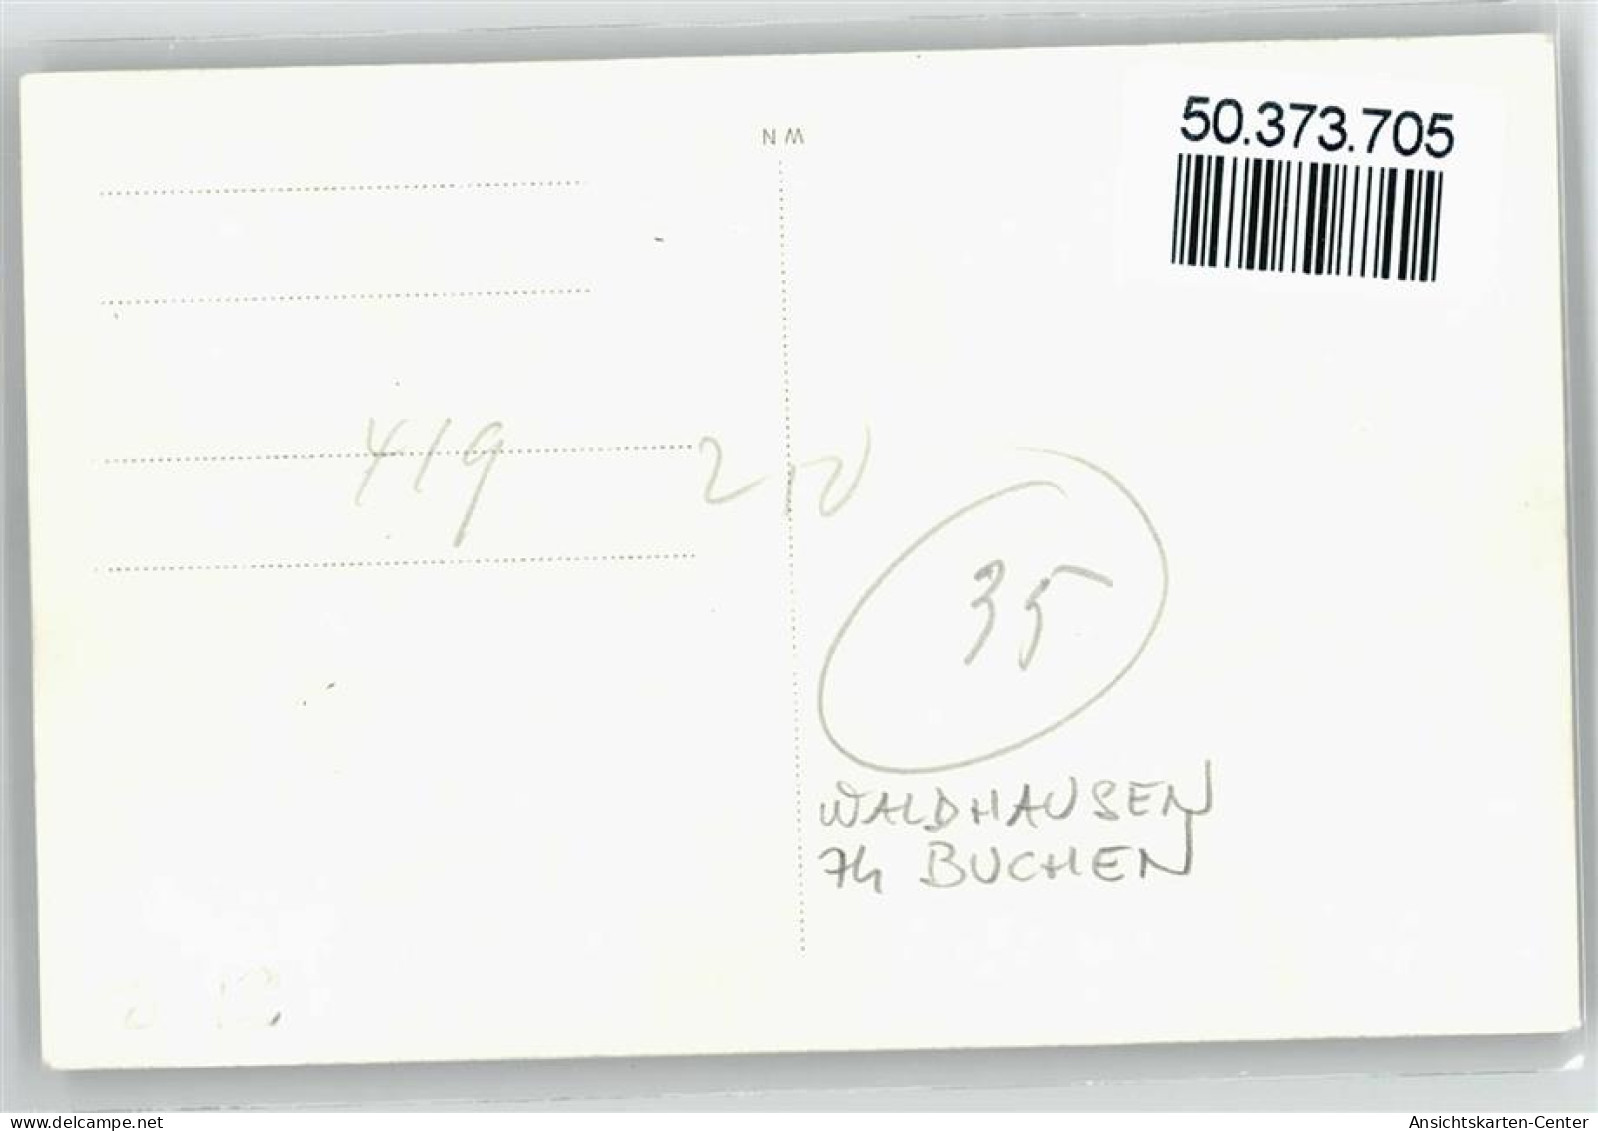 50373705 - Waldhausen , Odenw - Buchen